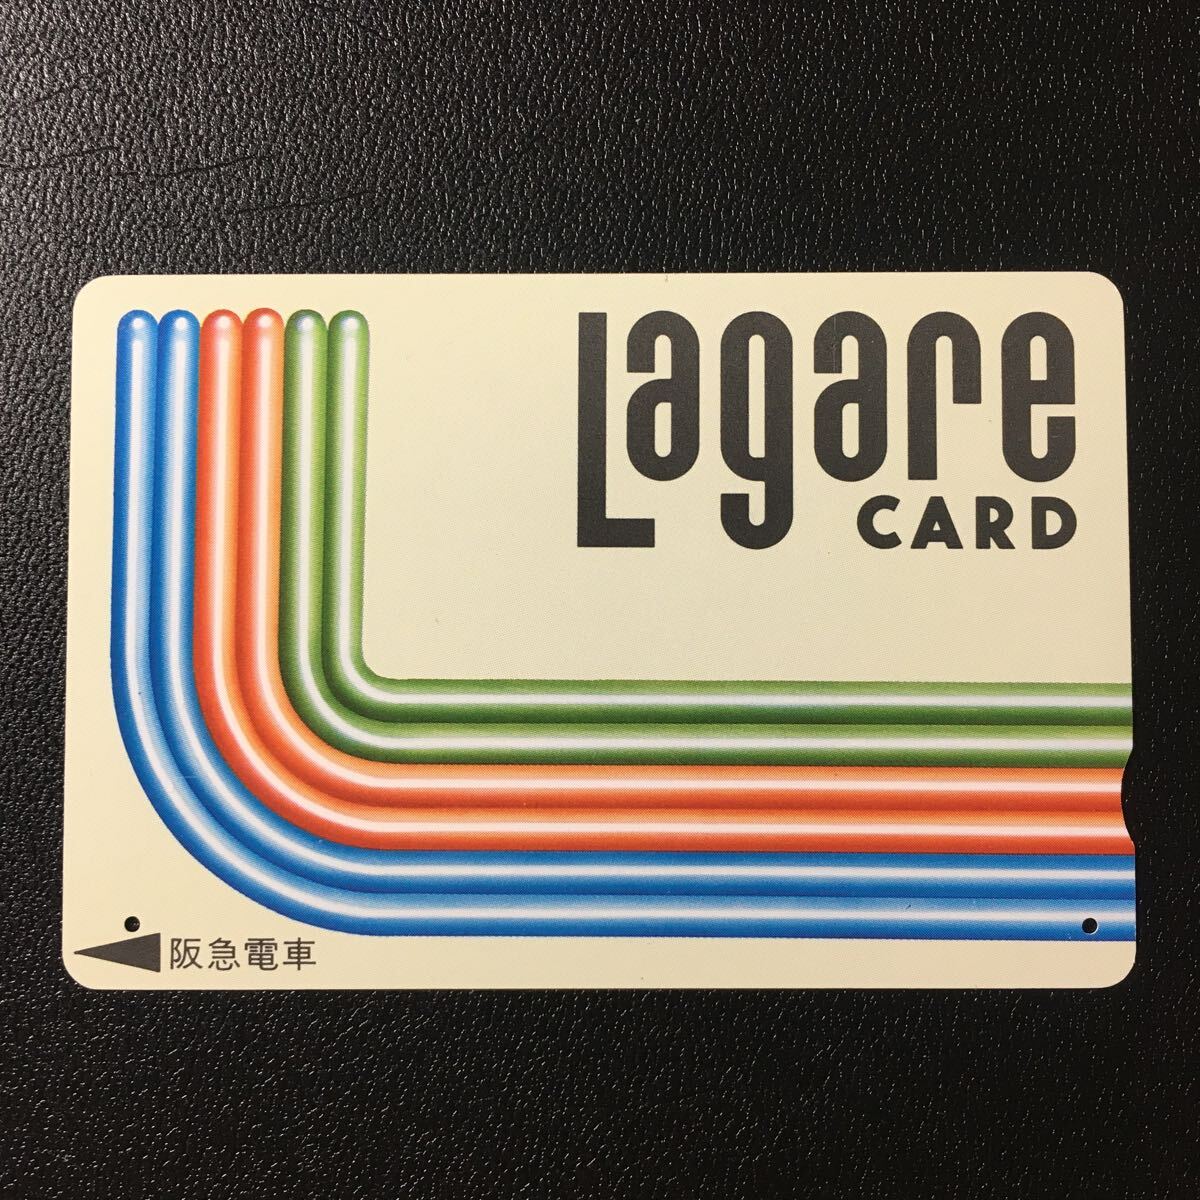 1989年度券売機発売開始柄ー「3系統路線(イメージ)」ー阪急ラガールカード(使用済スルッとKANSAI)_画像1